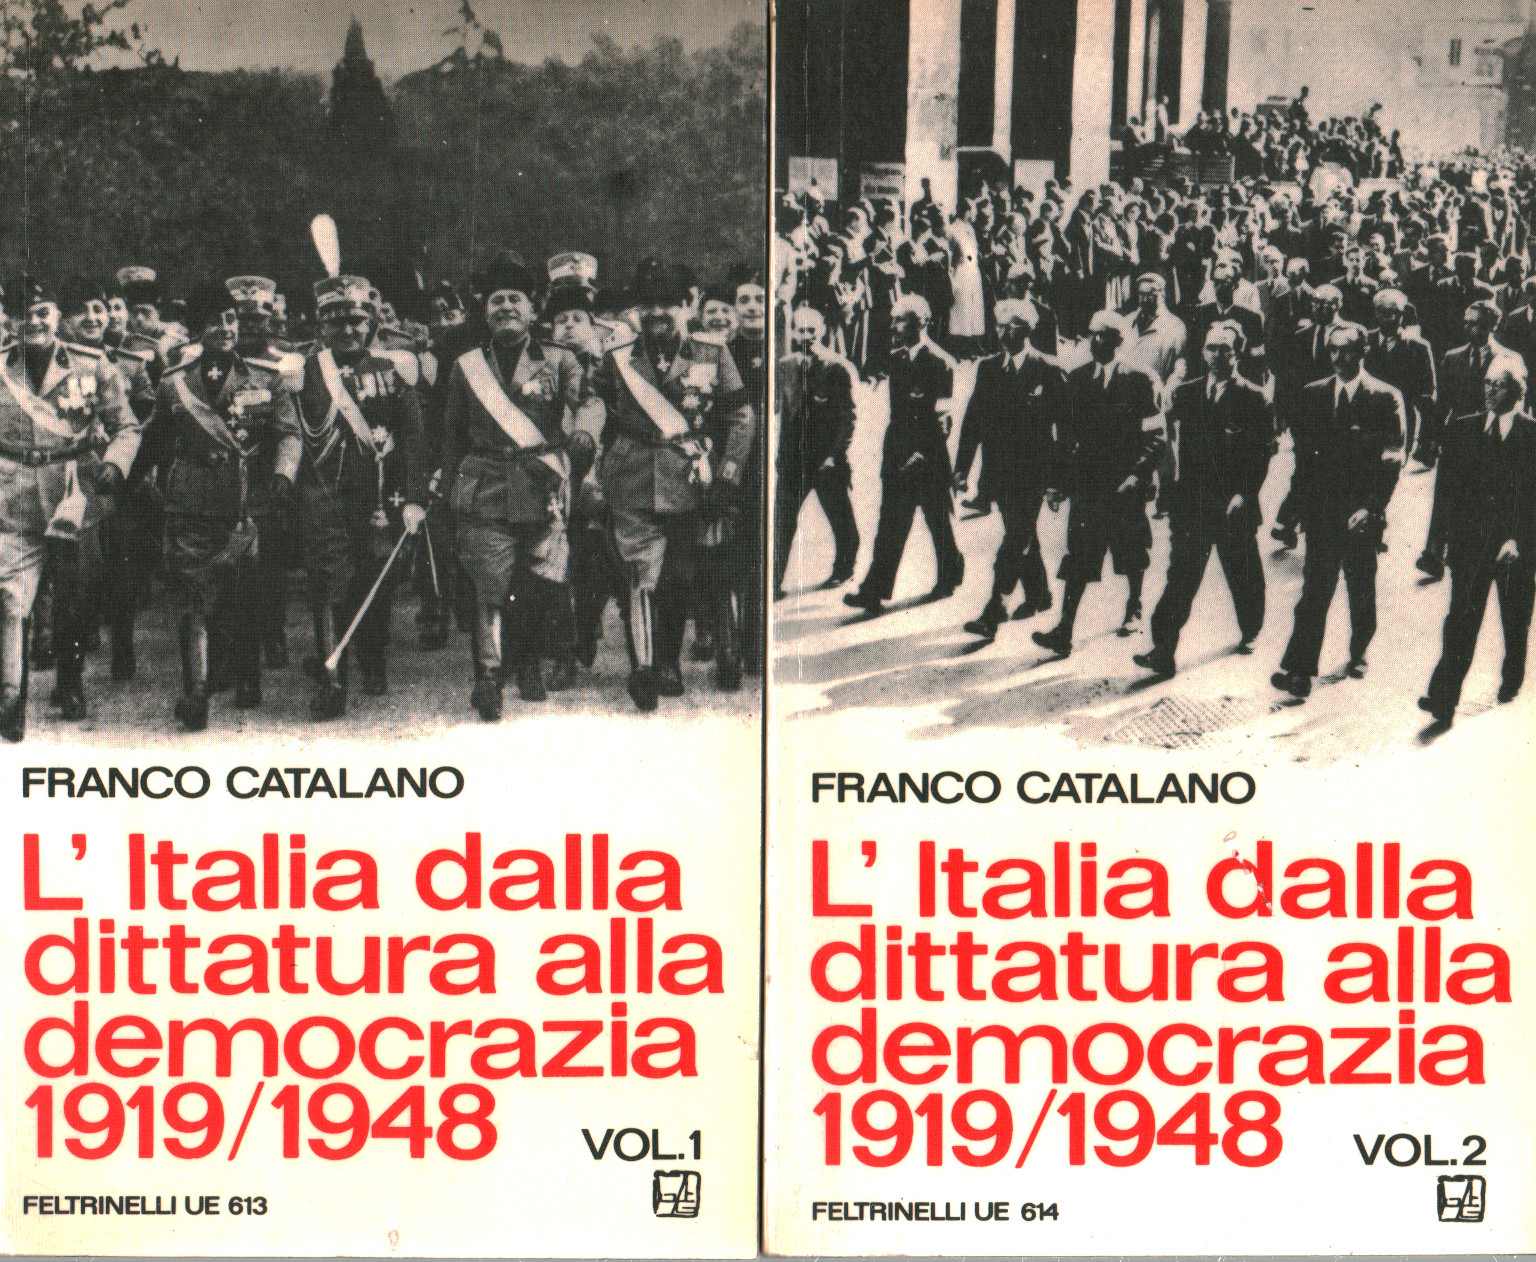 L'Italia dalla dittatura alla democrazia 1919/194, s.a.